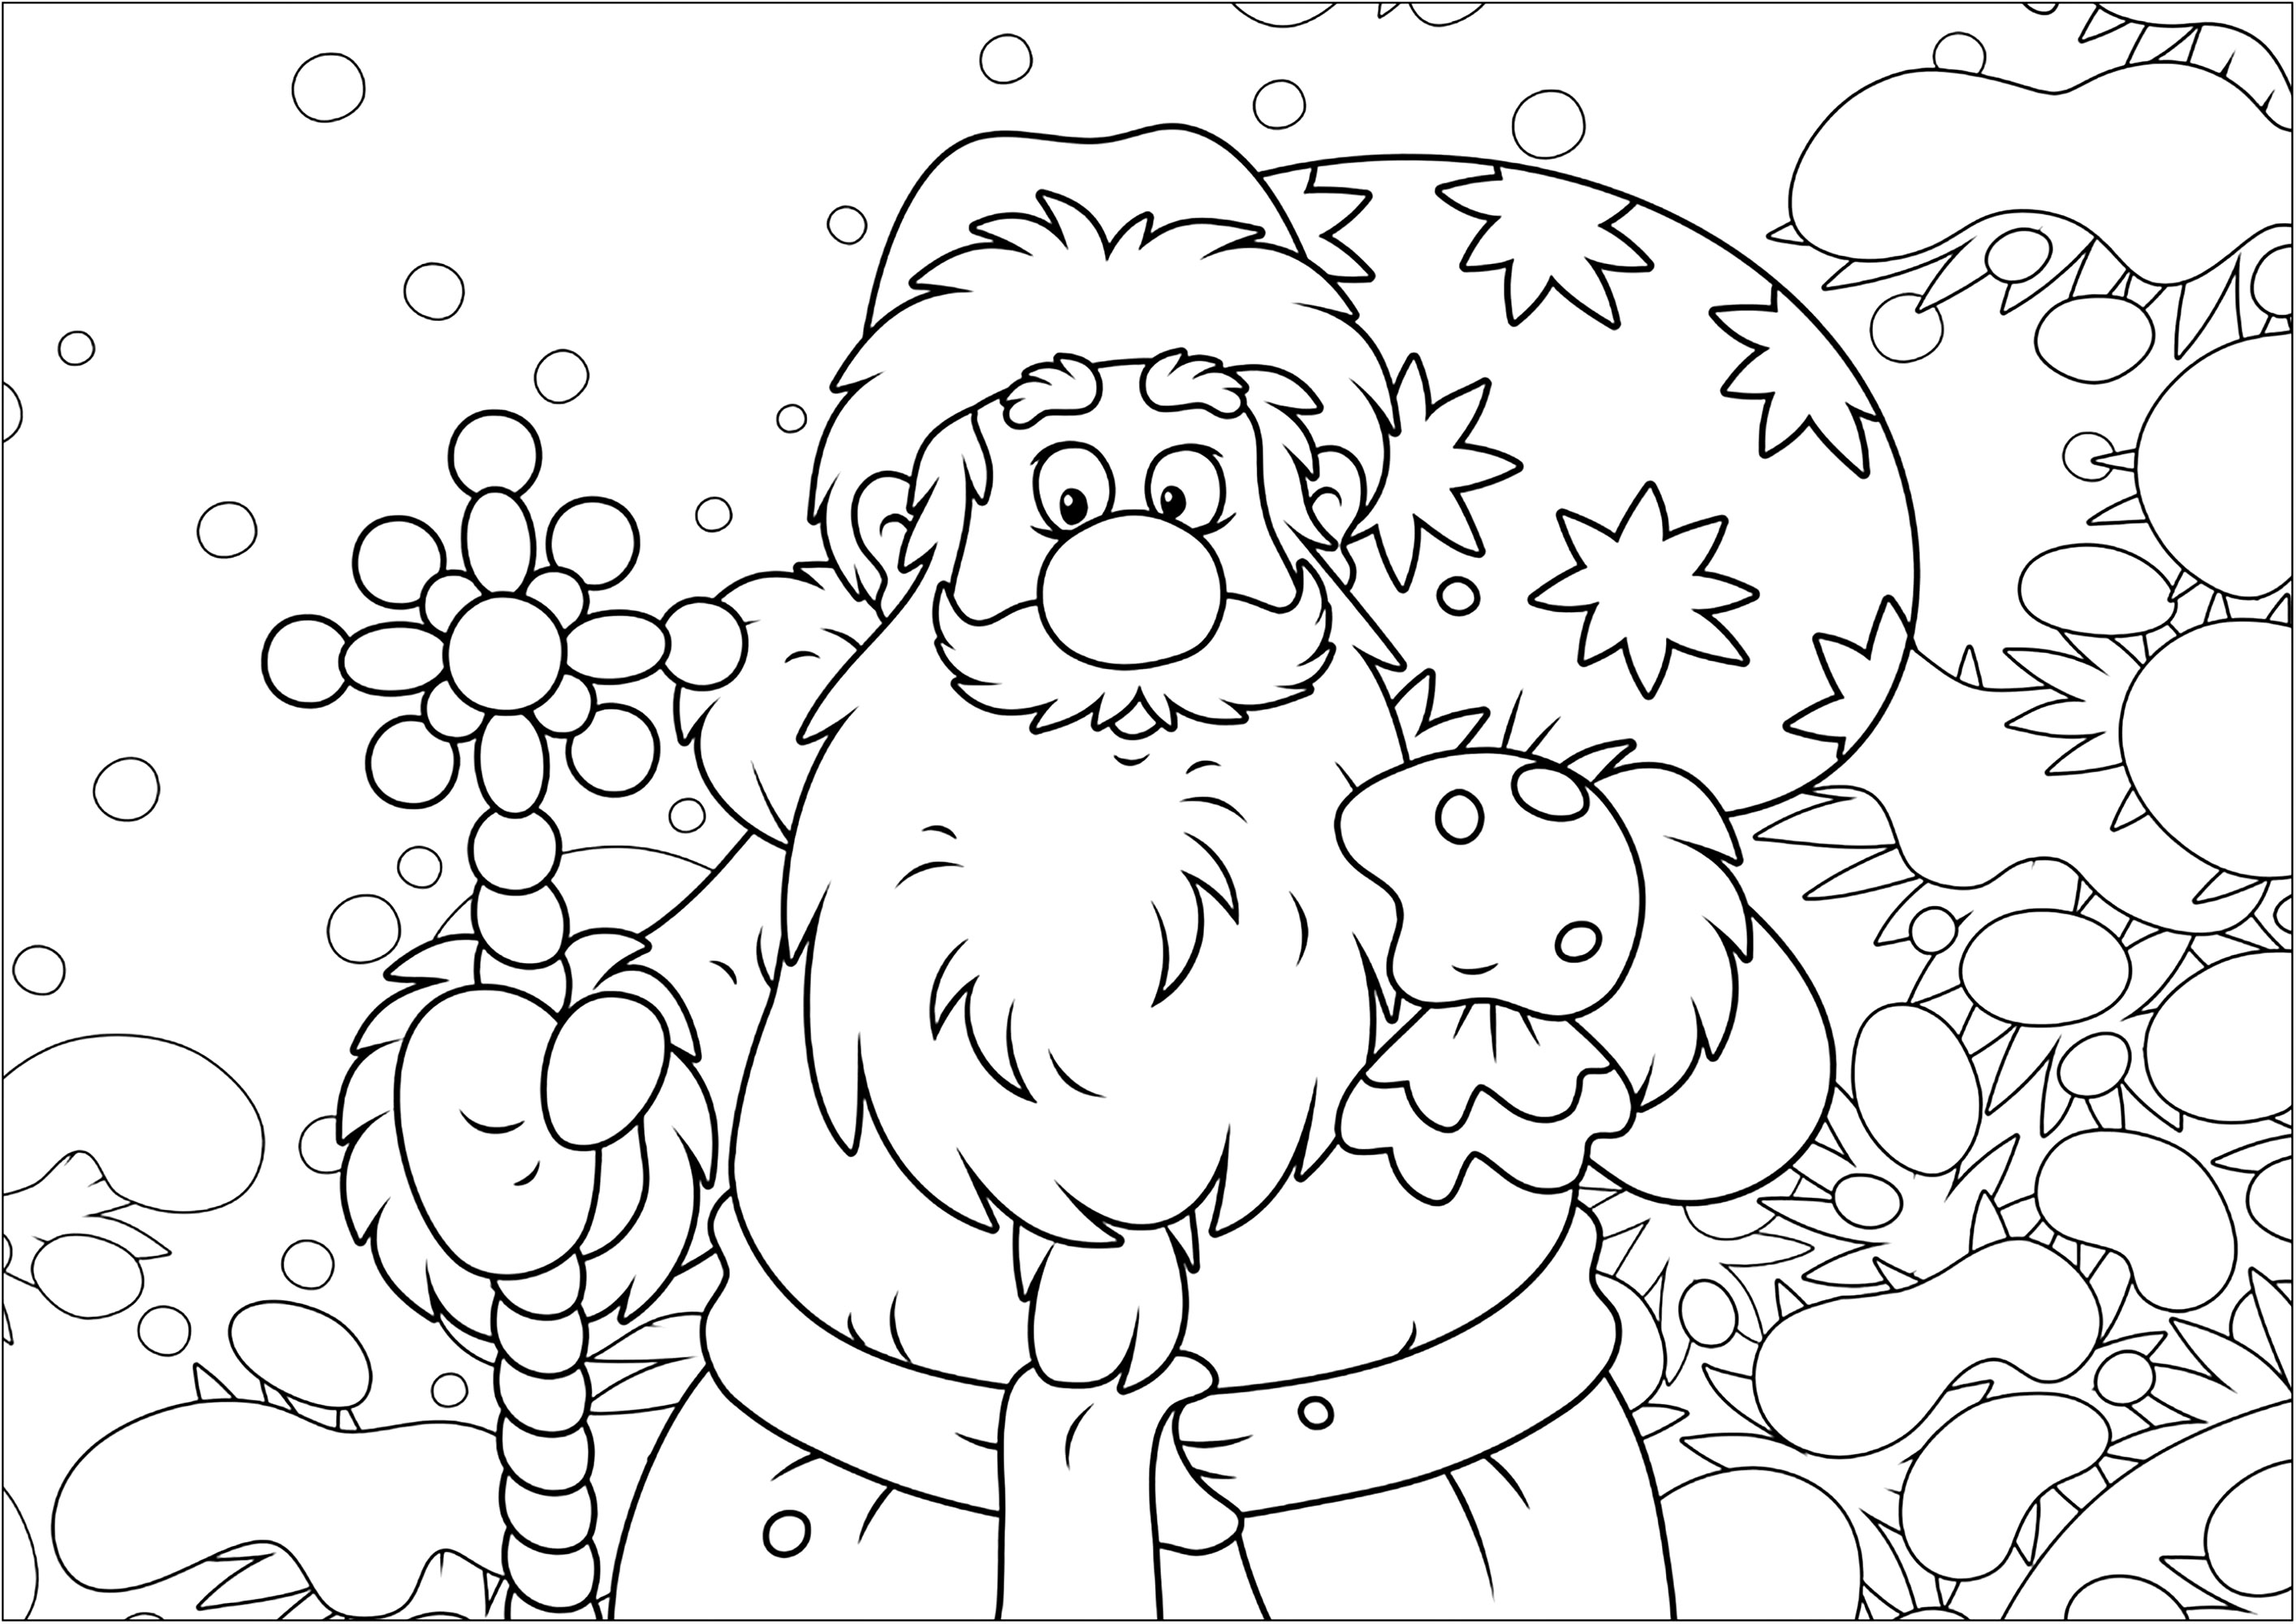 Joli Père-Noël et sa hotte pleine de cadeaux. Un joli coloriage de Noël, avec un paysage enneigé et un Père-Noël dessiné avec un style très 'cartoon', Source : 123rf   Artiste : Alex. Bannykh